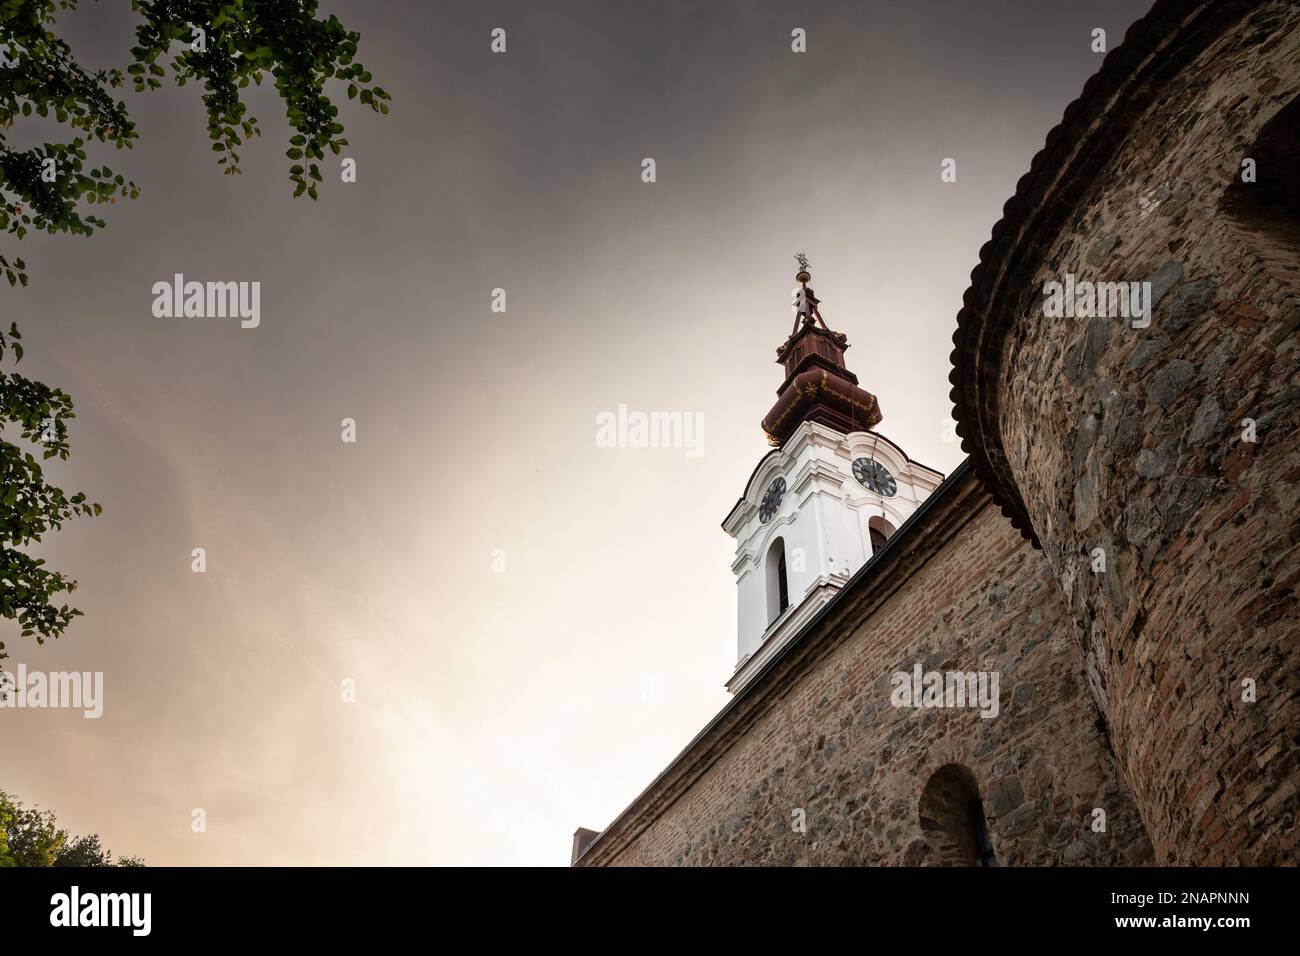 Bild des ikonischen Uhrturms der serbischen orthodoxen Kirche von Stari Slankamen, in Serbien, aufgenommen während eines warmen Sonnenuntergangs. Stari Slankamen auch bekannt Stockfoto